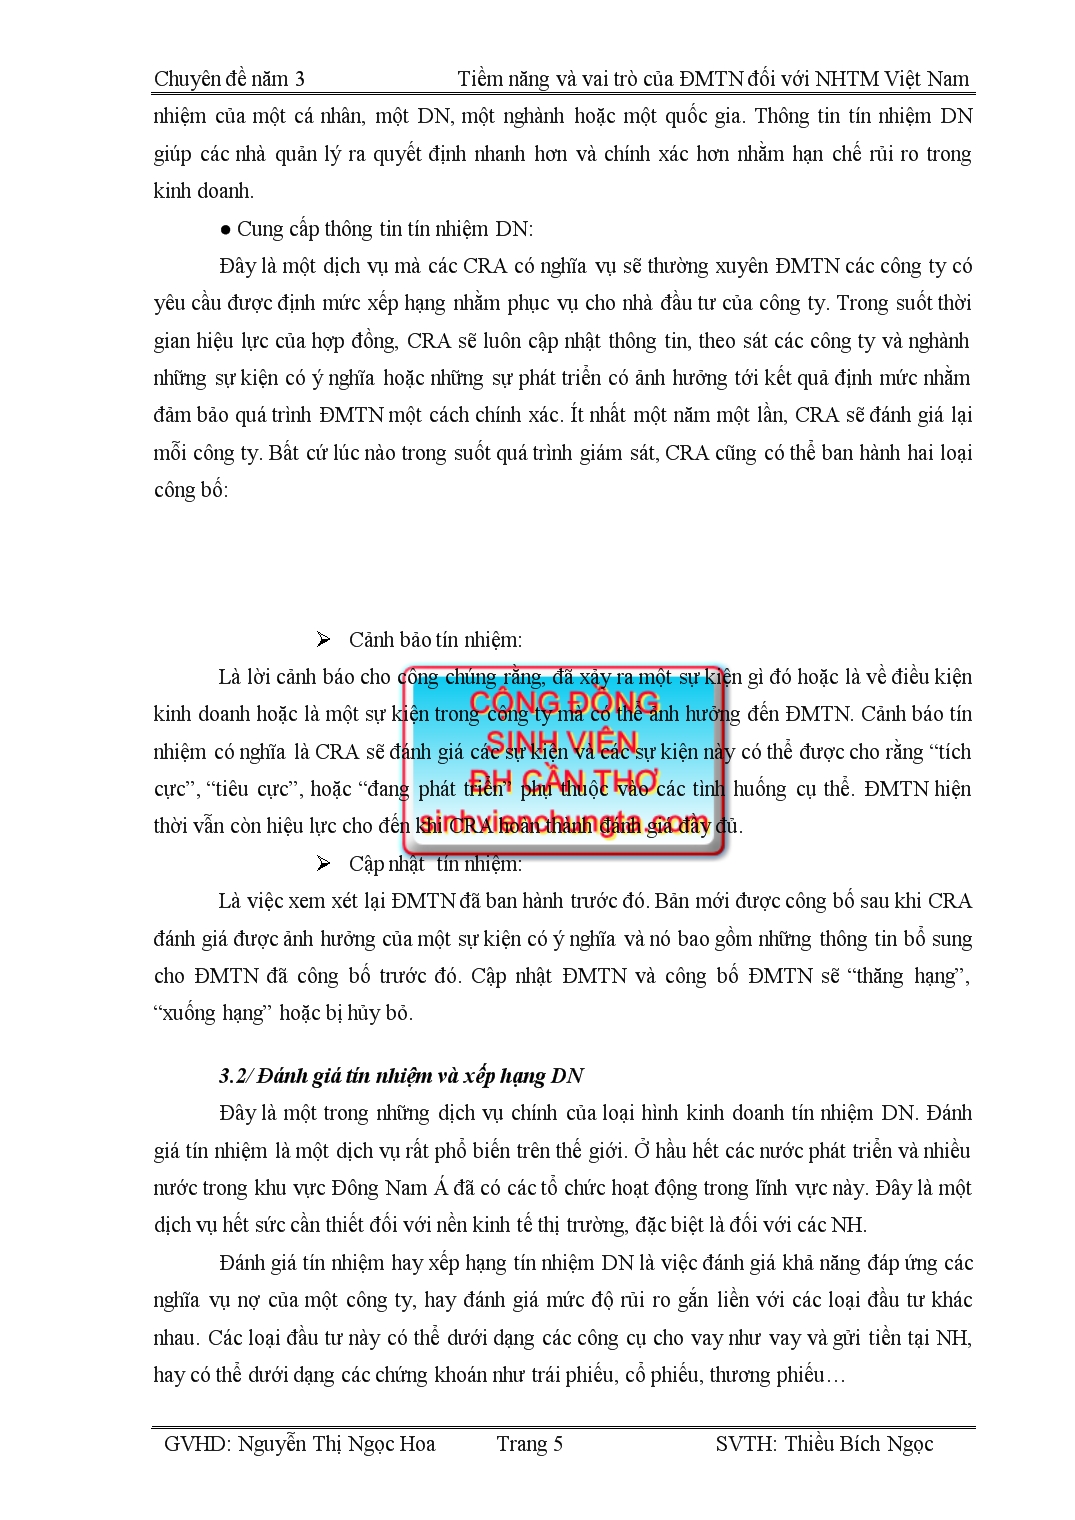 Chuyên đề Tiềm năng và vai trò của định mức tín nhiệm đối với hoạt động của hệ thống NHTM Việt Nam trang 5